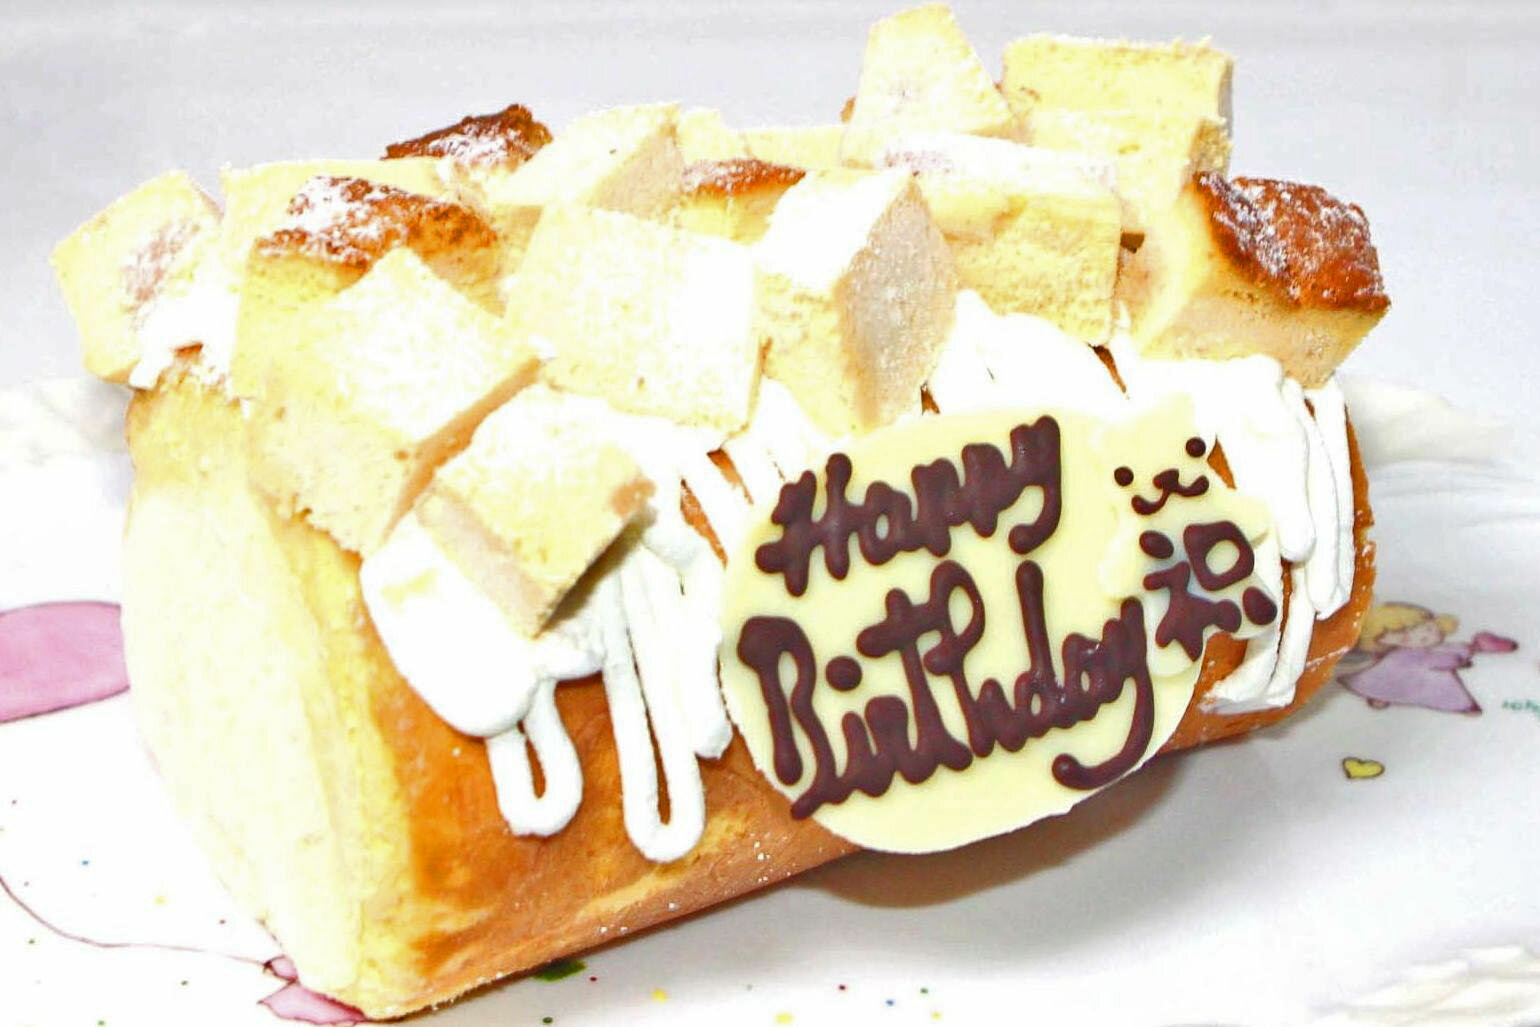 レアチーズロールデコレーションケーキ 送料別 あす楽 あすつく 誕生日ケーキ バースデーケーキ ギフト プレゼントケーキ アニバーサリー 記念日 お祝い メッセージプレート コンパクトケーキ